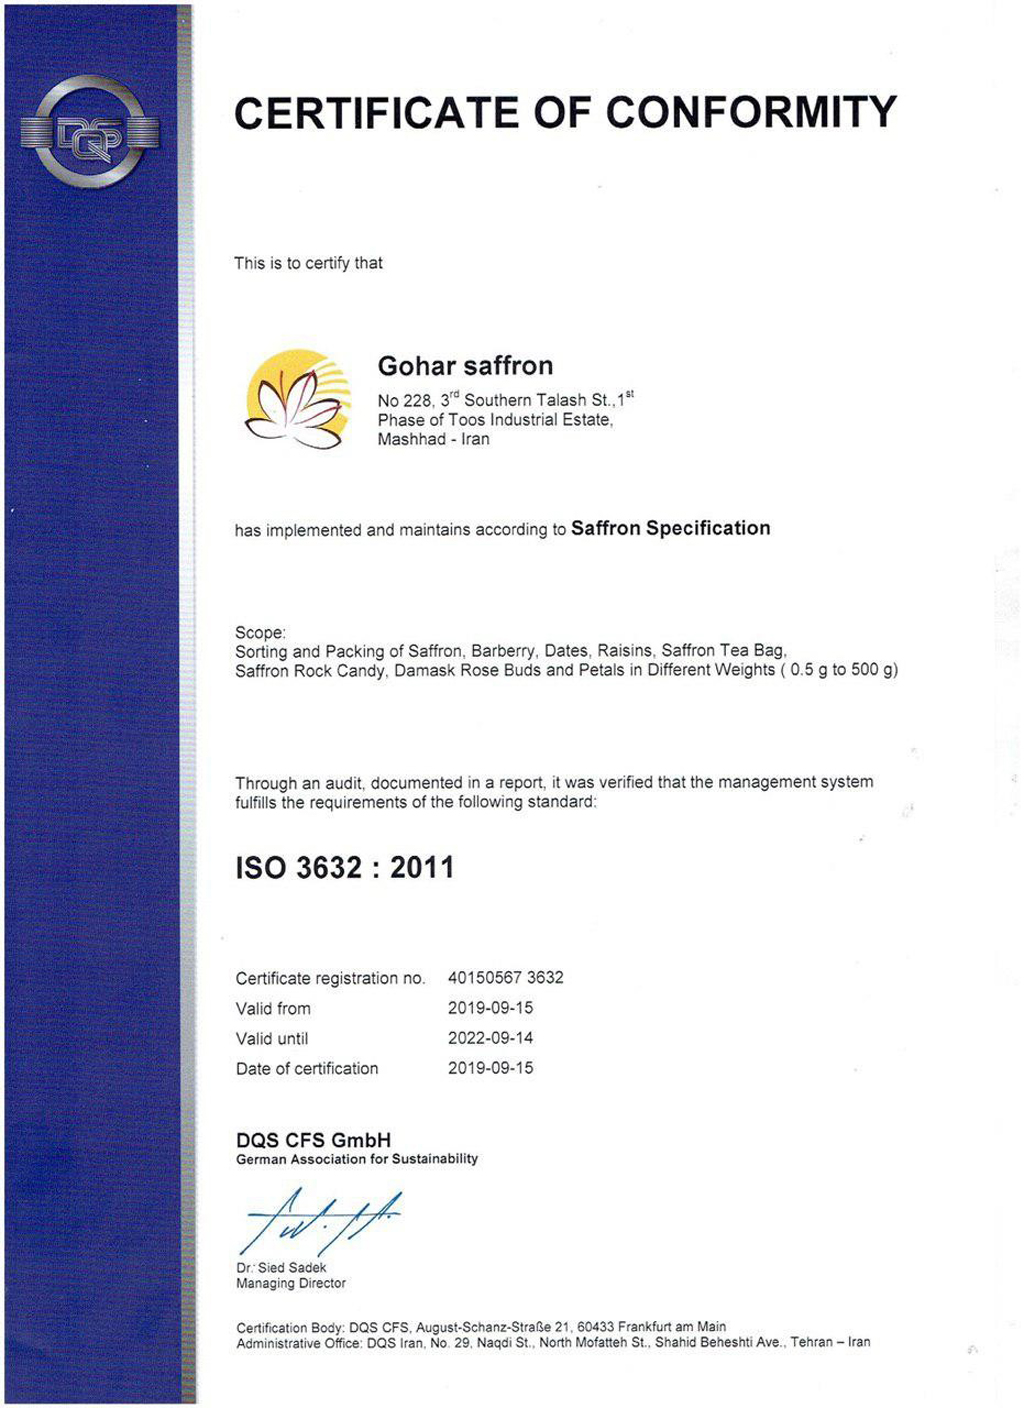 ISO 3632 là tiêu chí hàng đầu để đánh giá chất lượng Saffron cao cấp